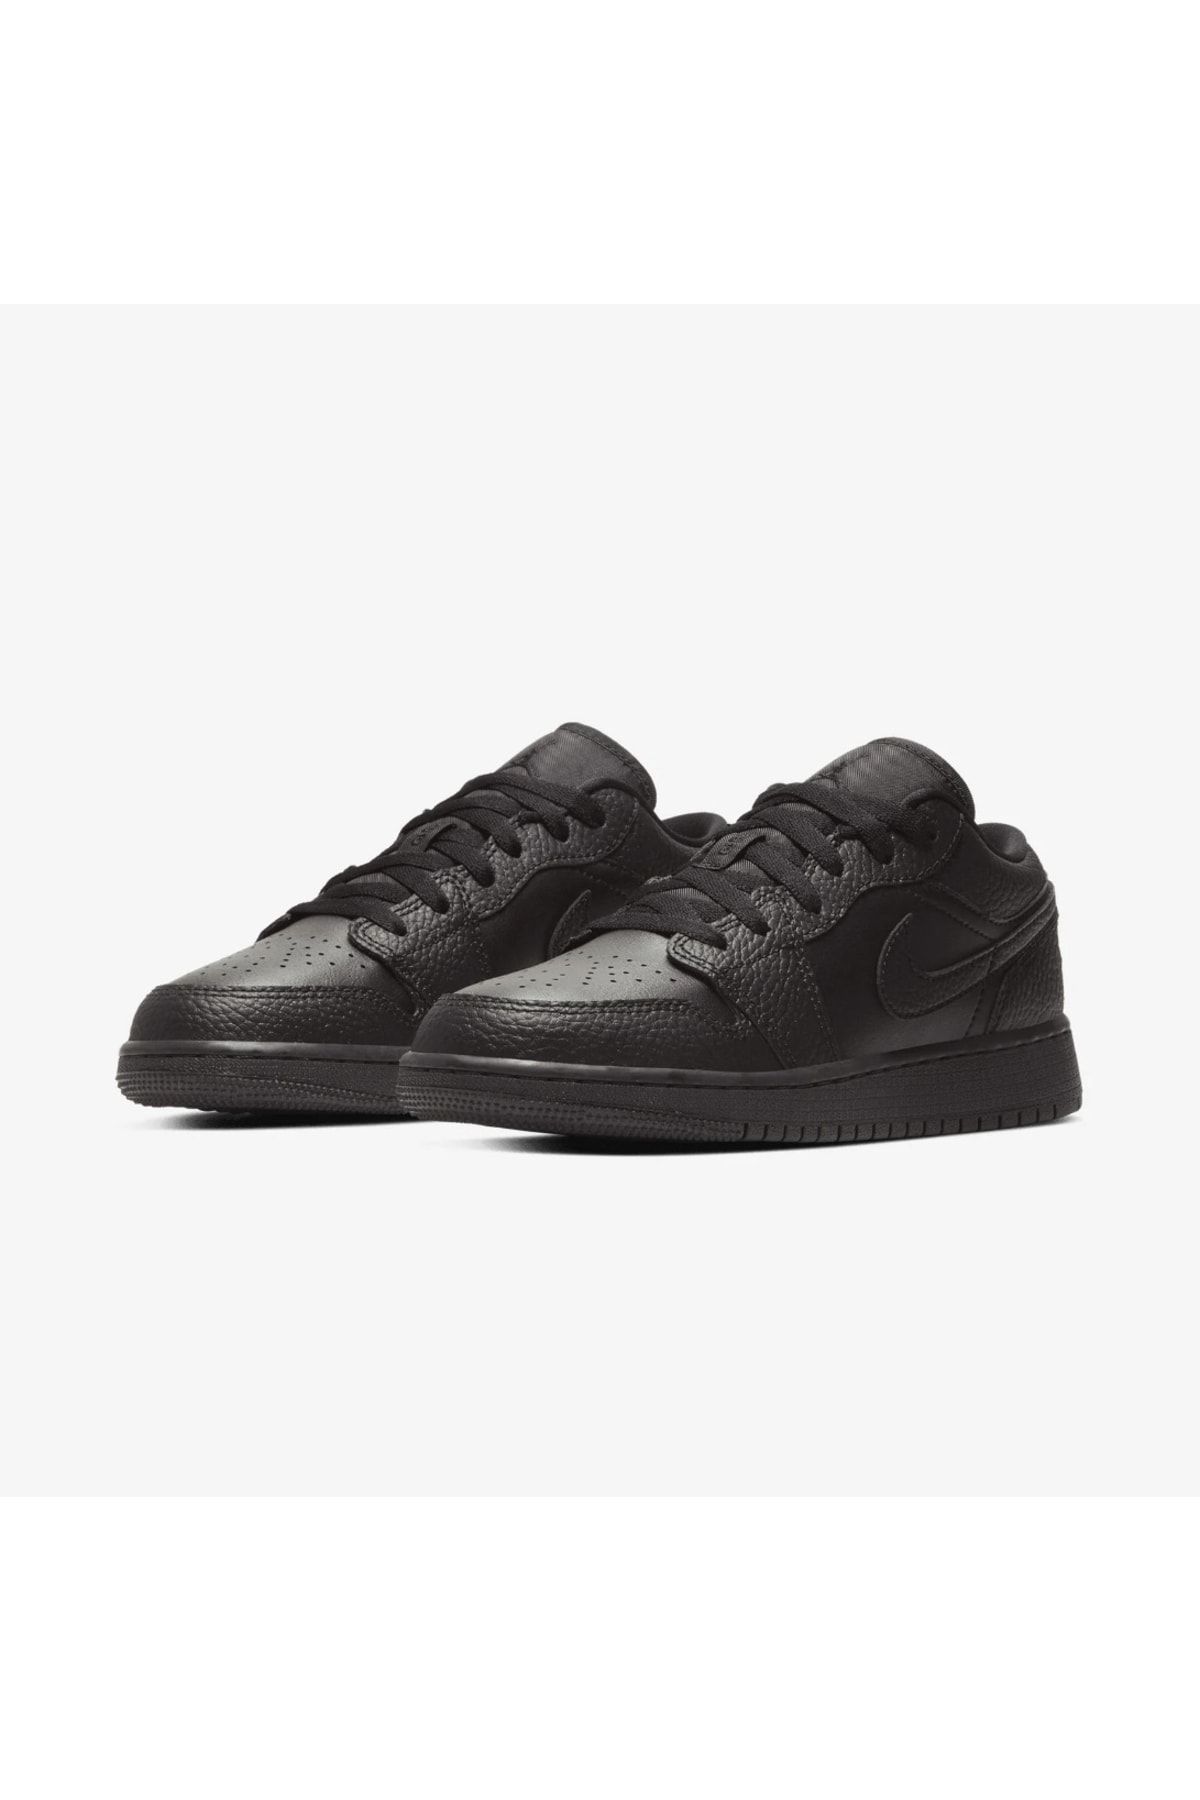 Nike Air Jordan 1 Low Tumbled Leather Black